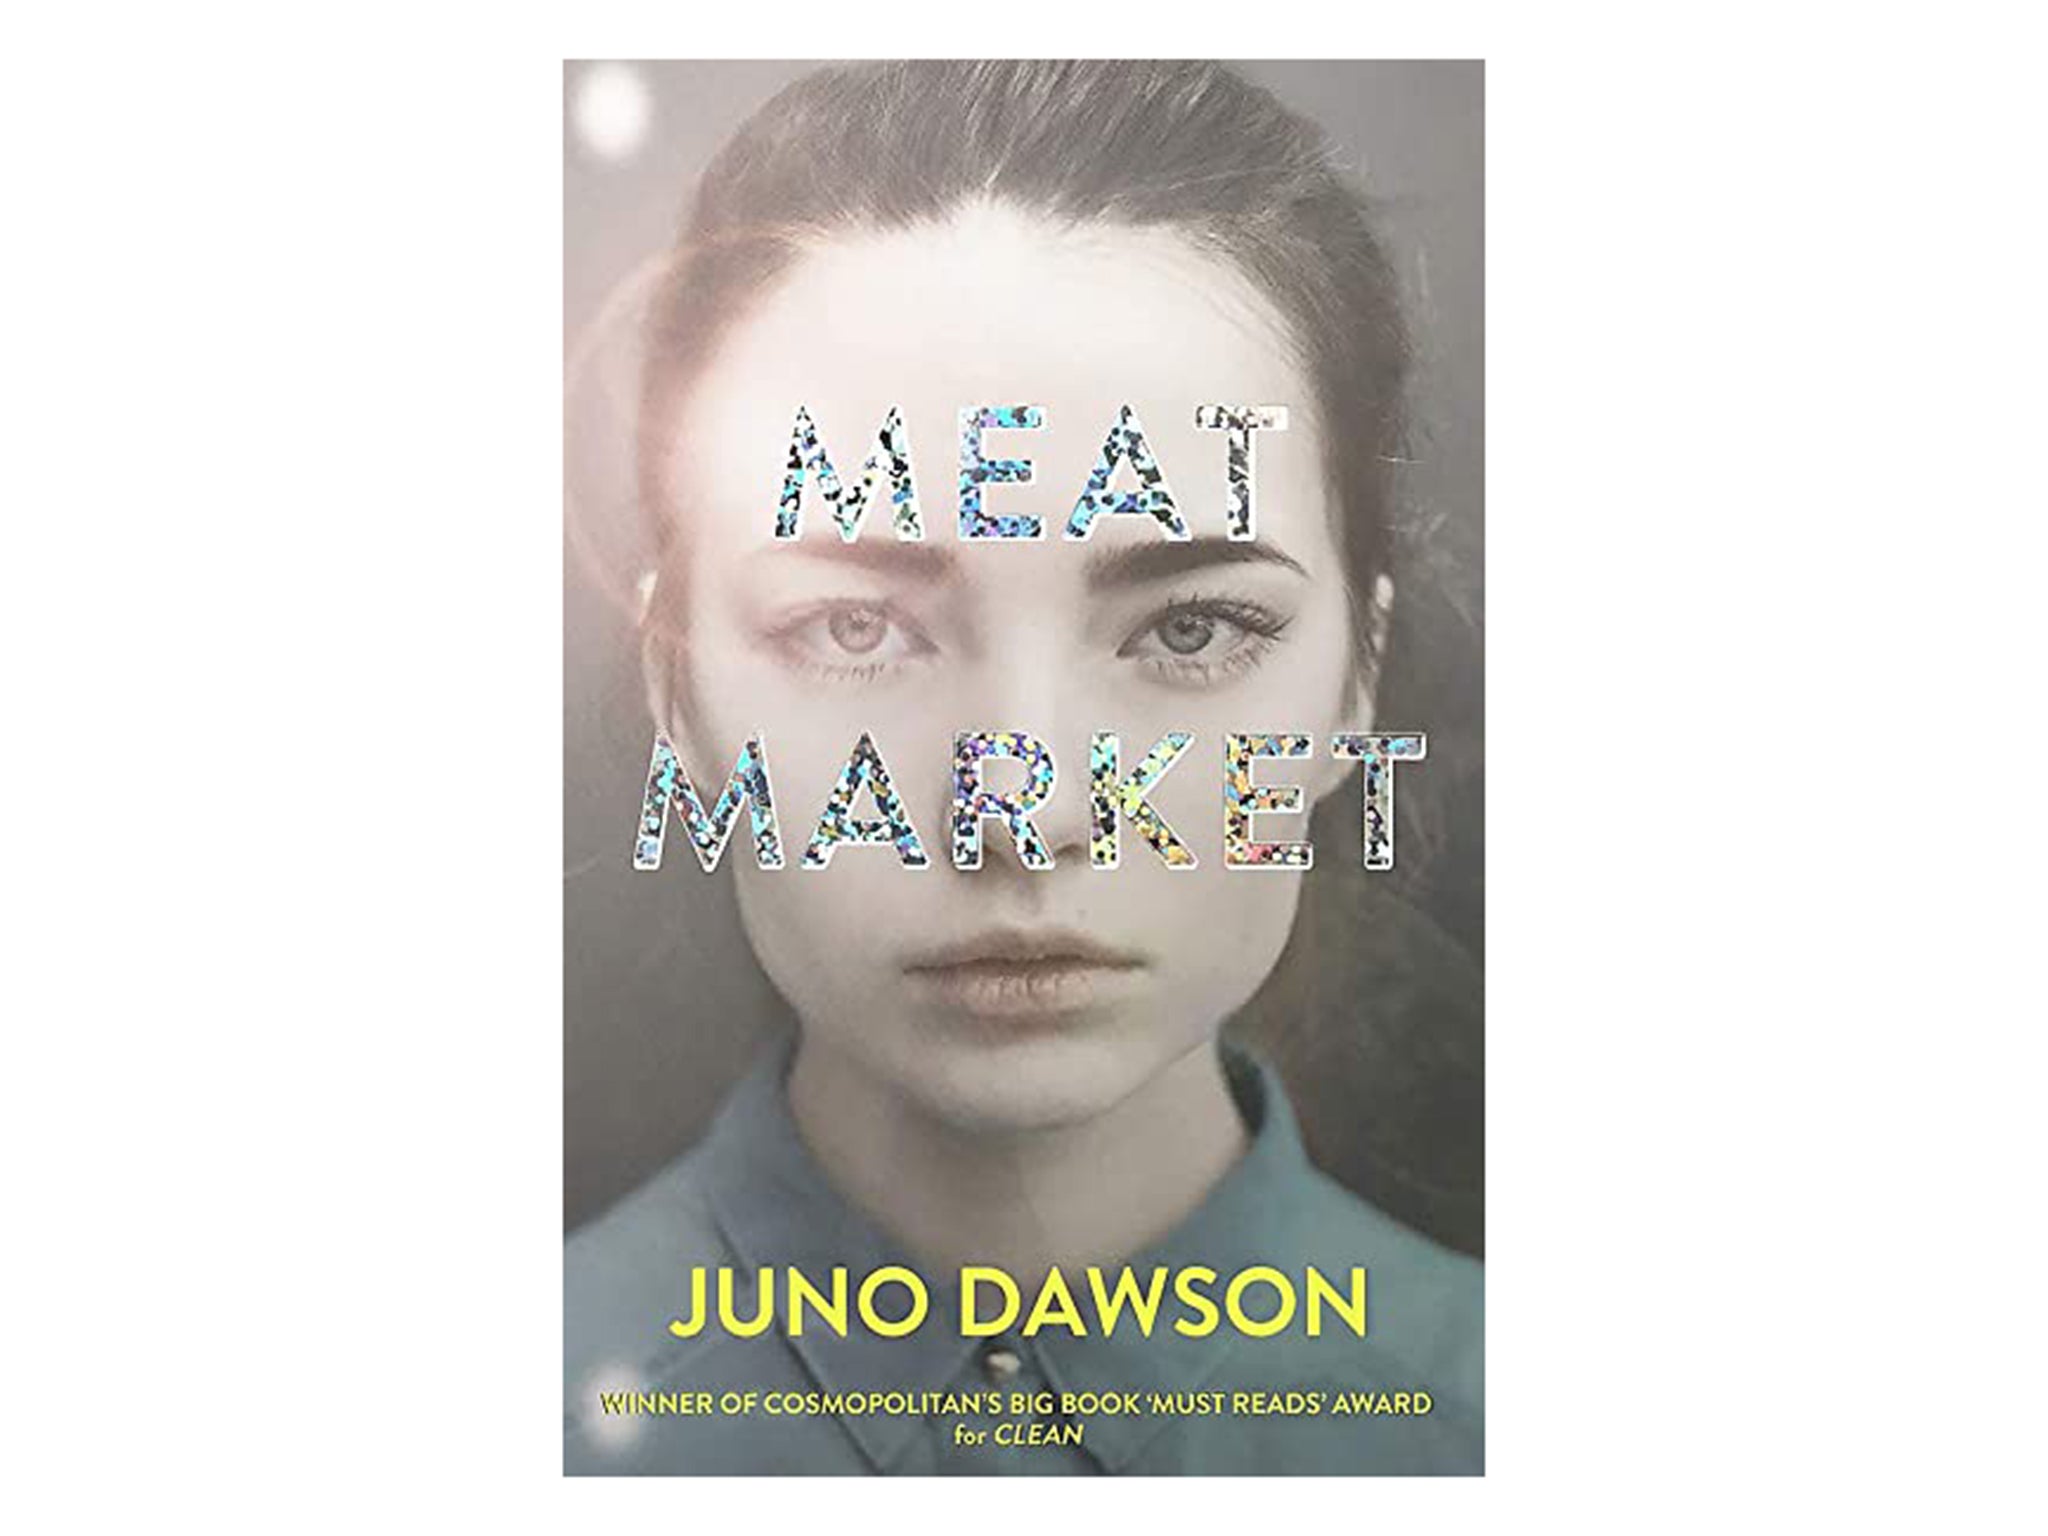 meat-market-juno-dawson-indybest.jpg